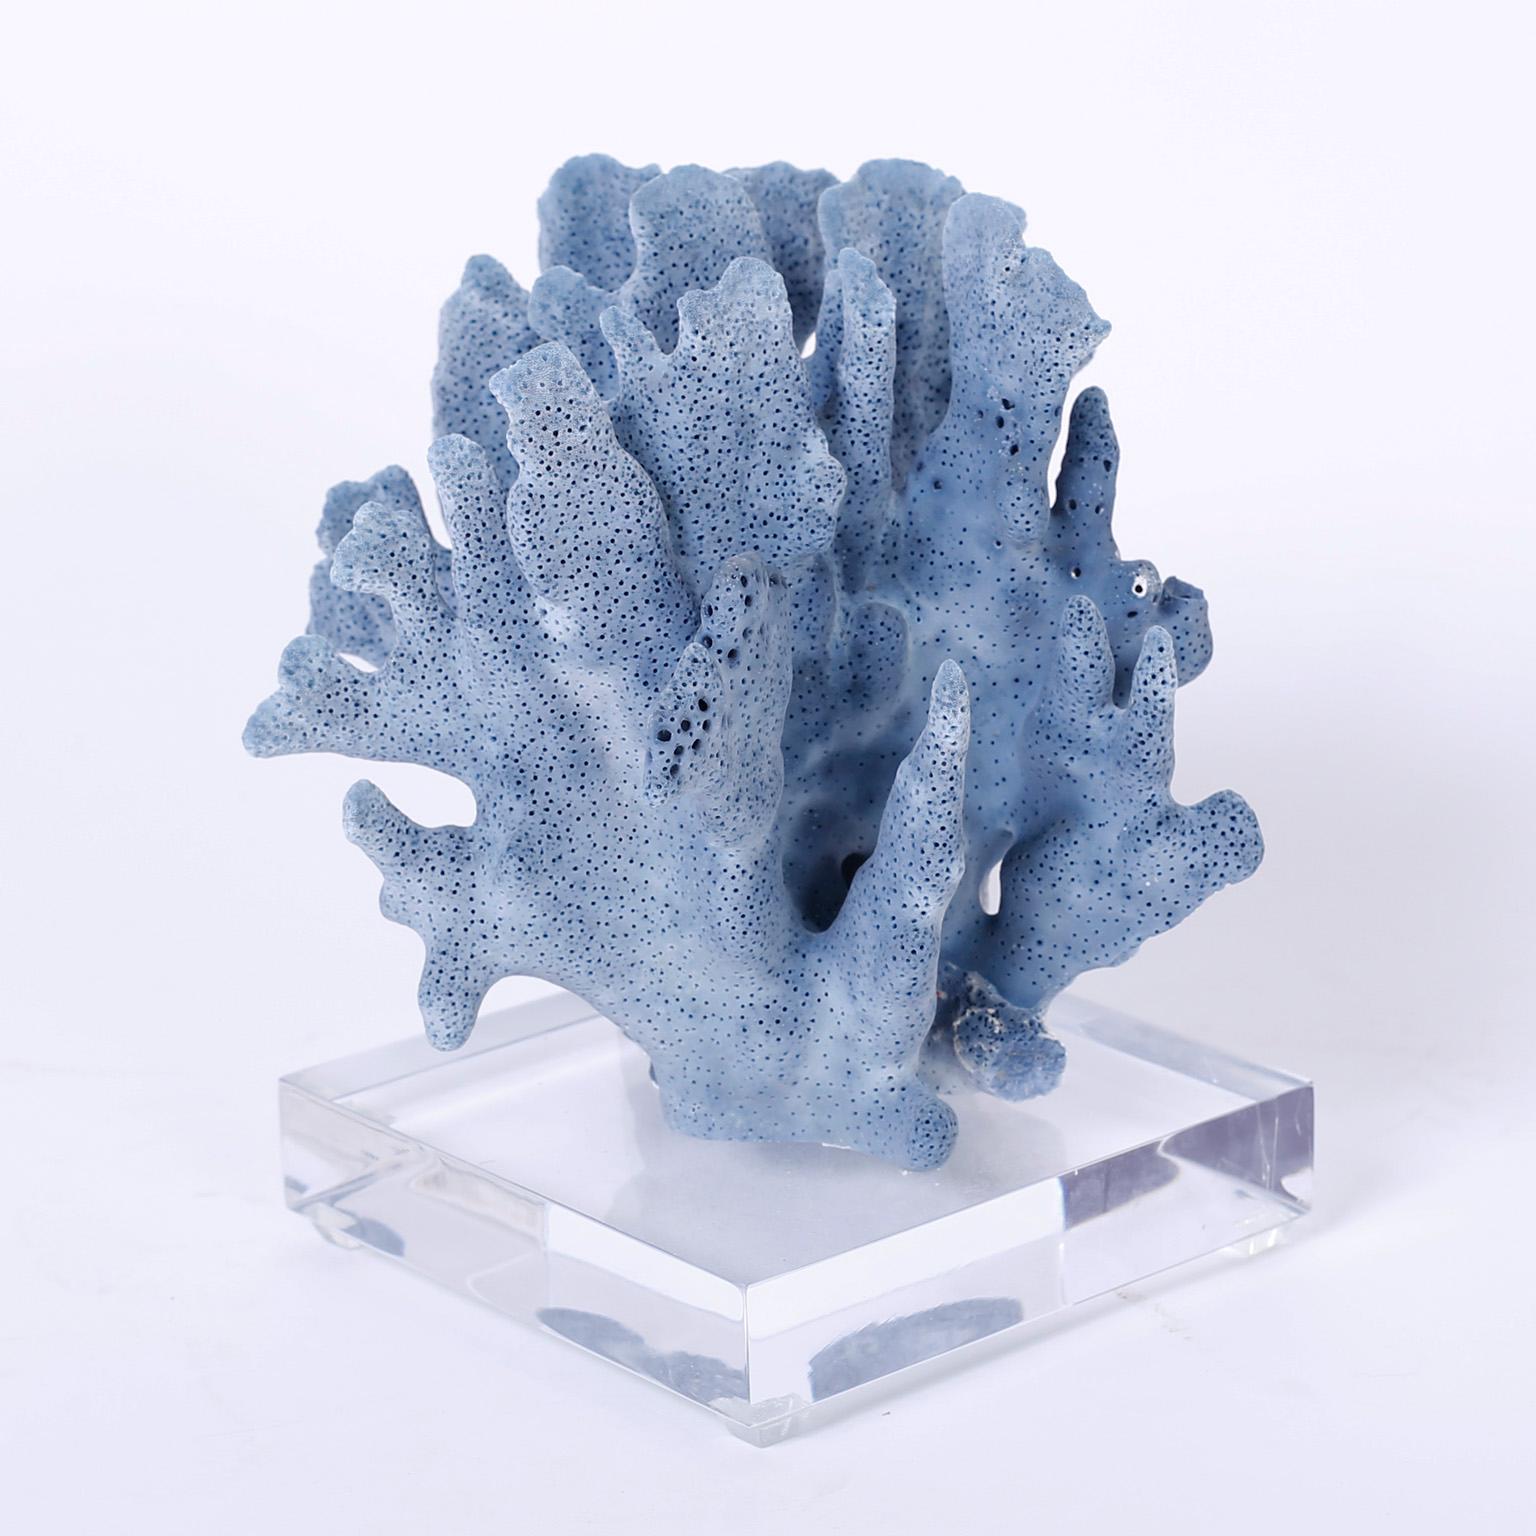 Three Blue Coral Specimens on Lucite (Organische Moderne)